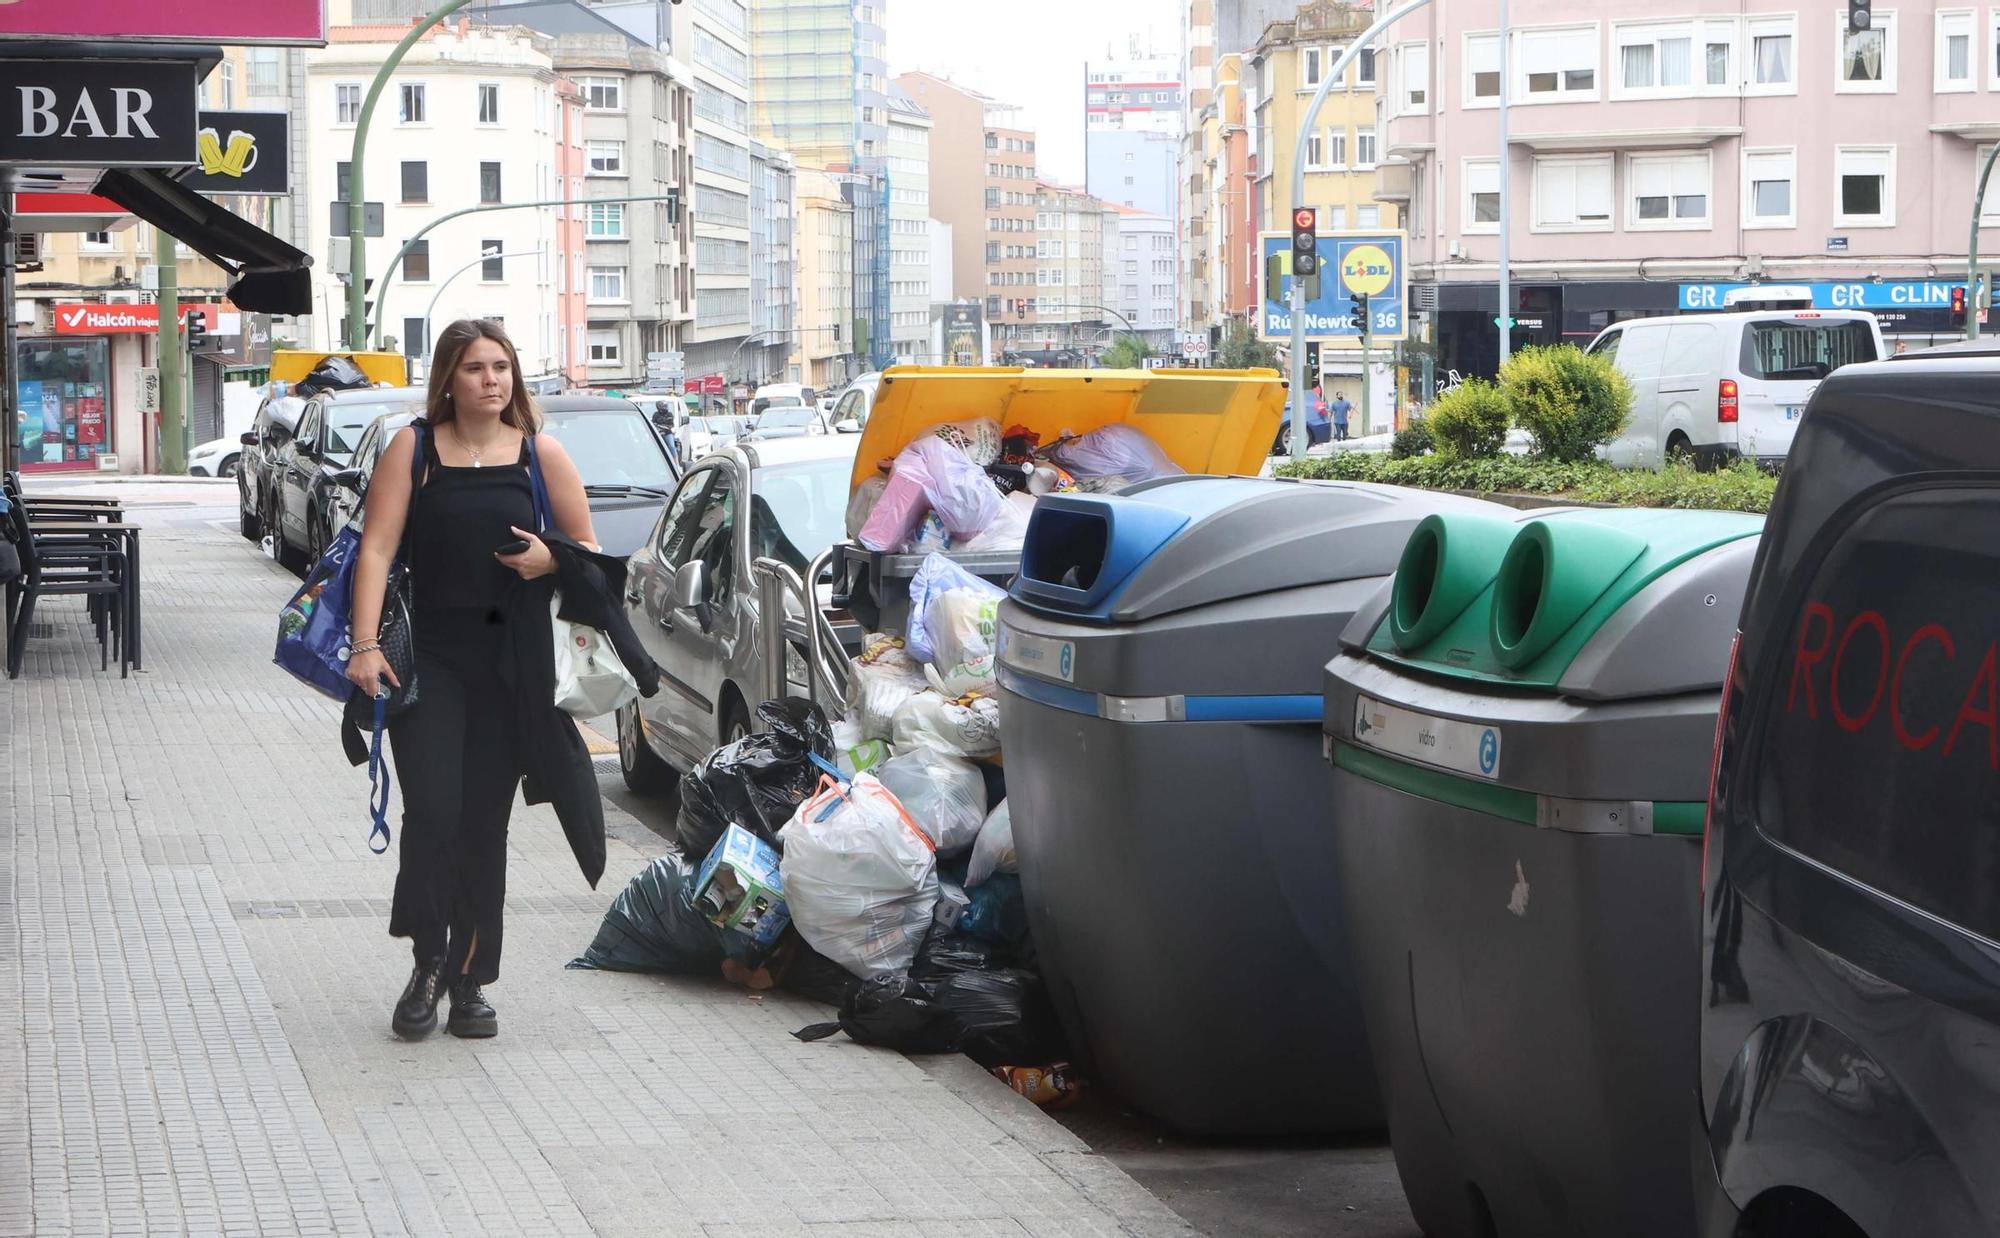 Huelga de la recogida de basuras en A Coruña: los desperdicios desbordan los contenedores